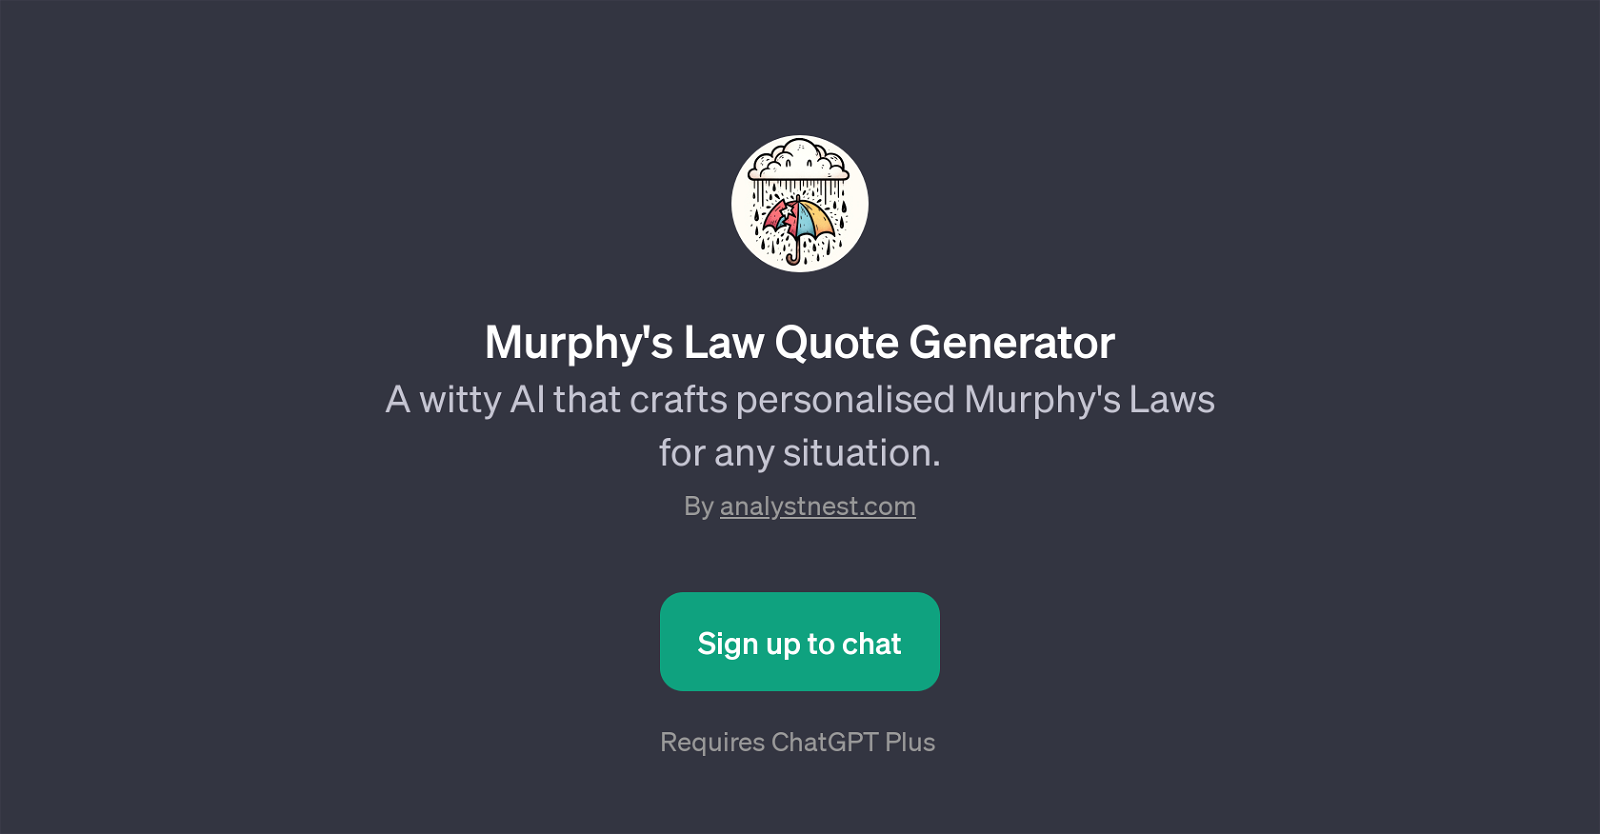 Murphy's Law Quote Generator website